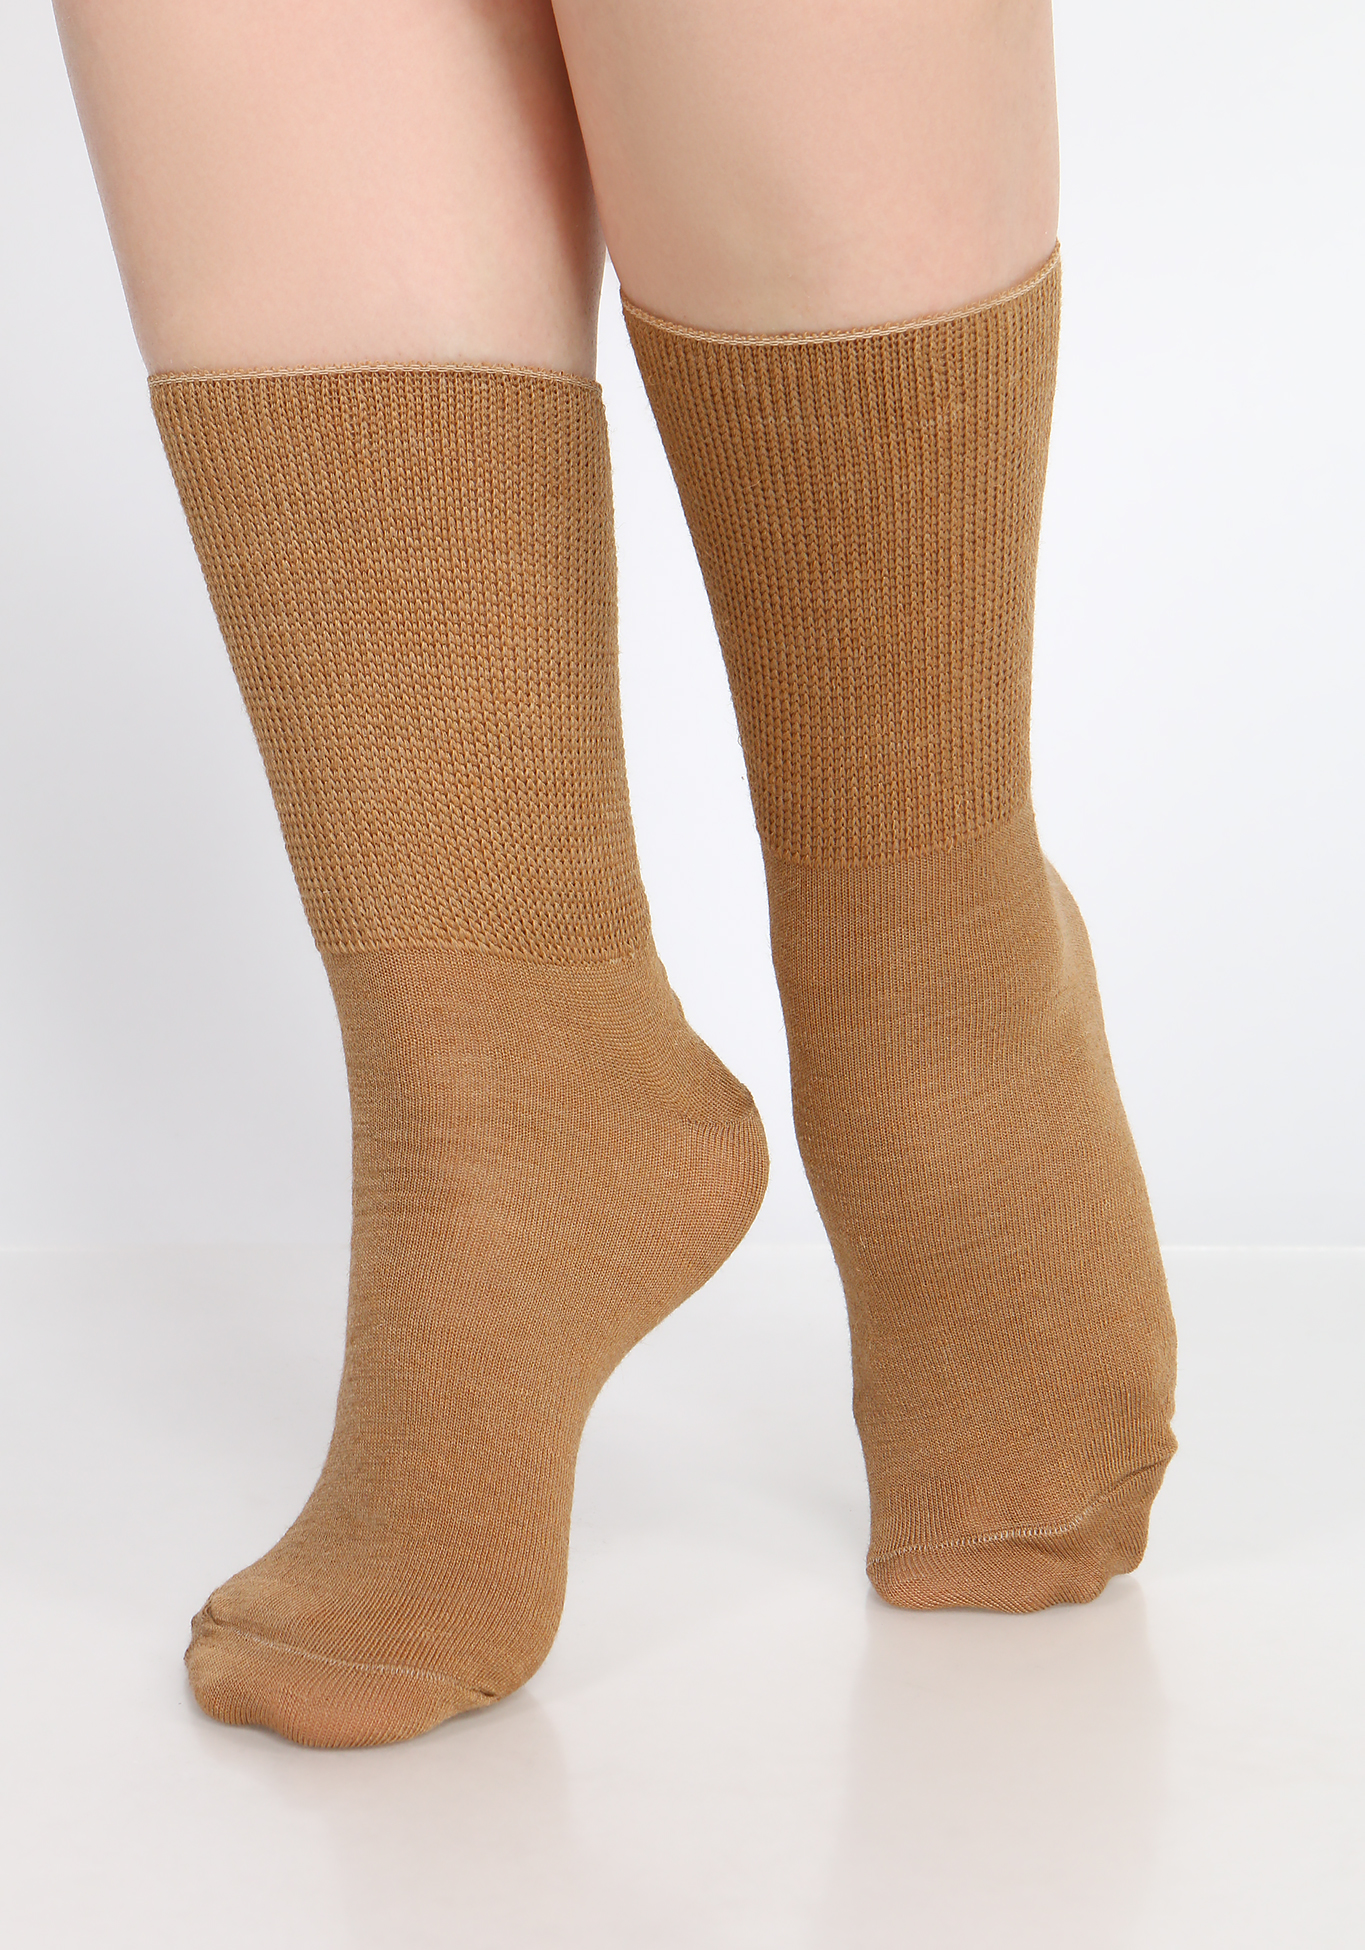 Носки на полную ногу из верблюжьей шерсти, 2 пары Центр Доктор, размер 44-45